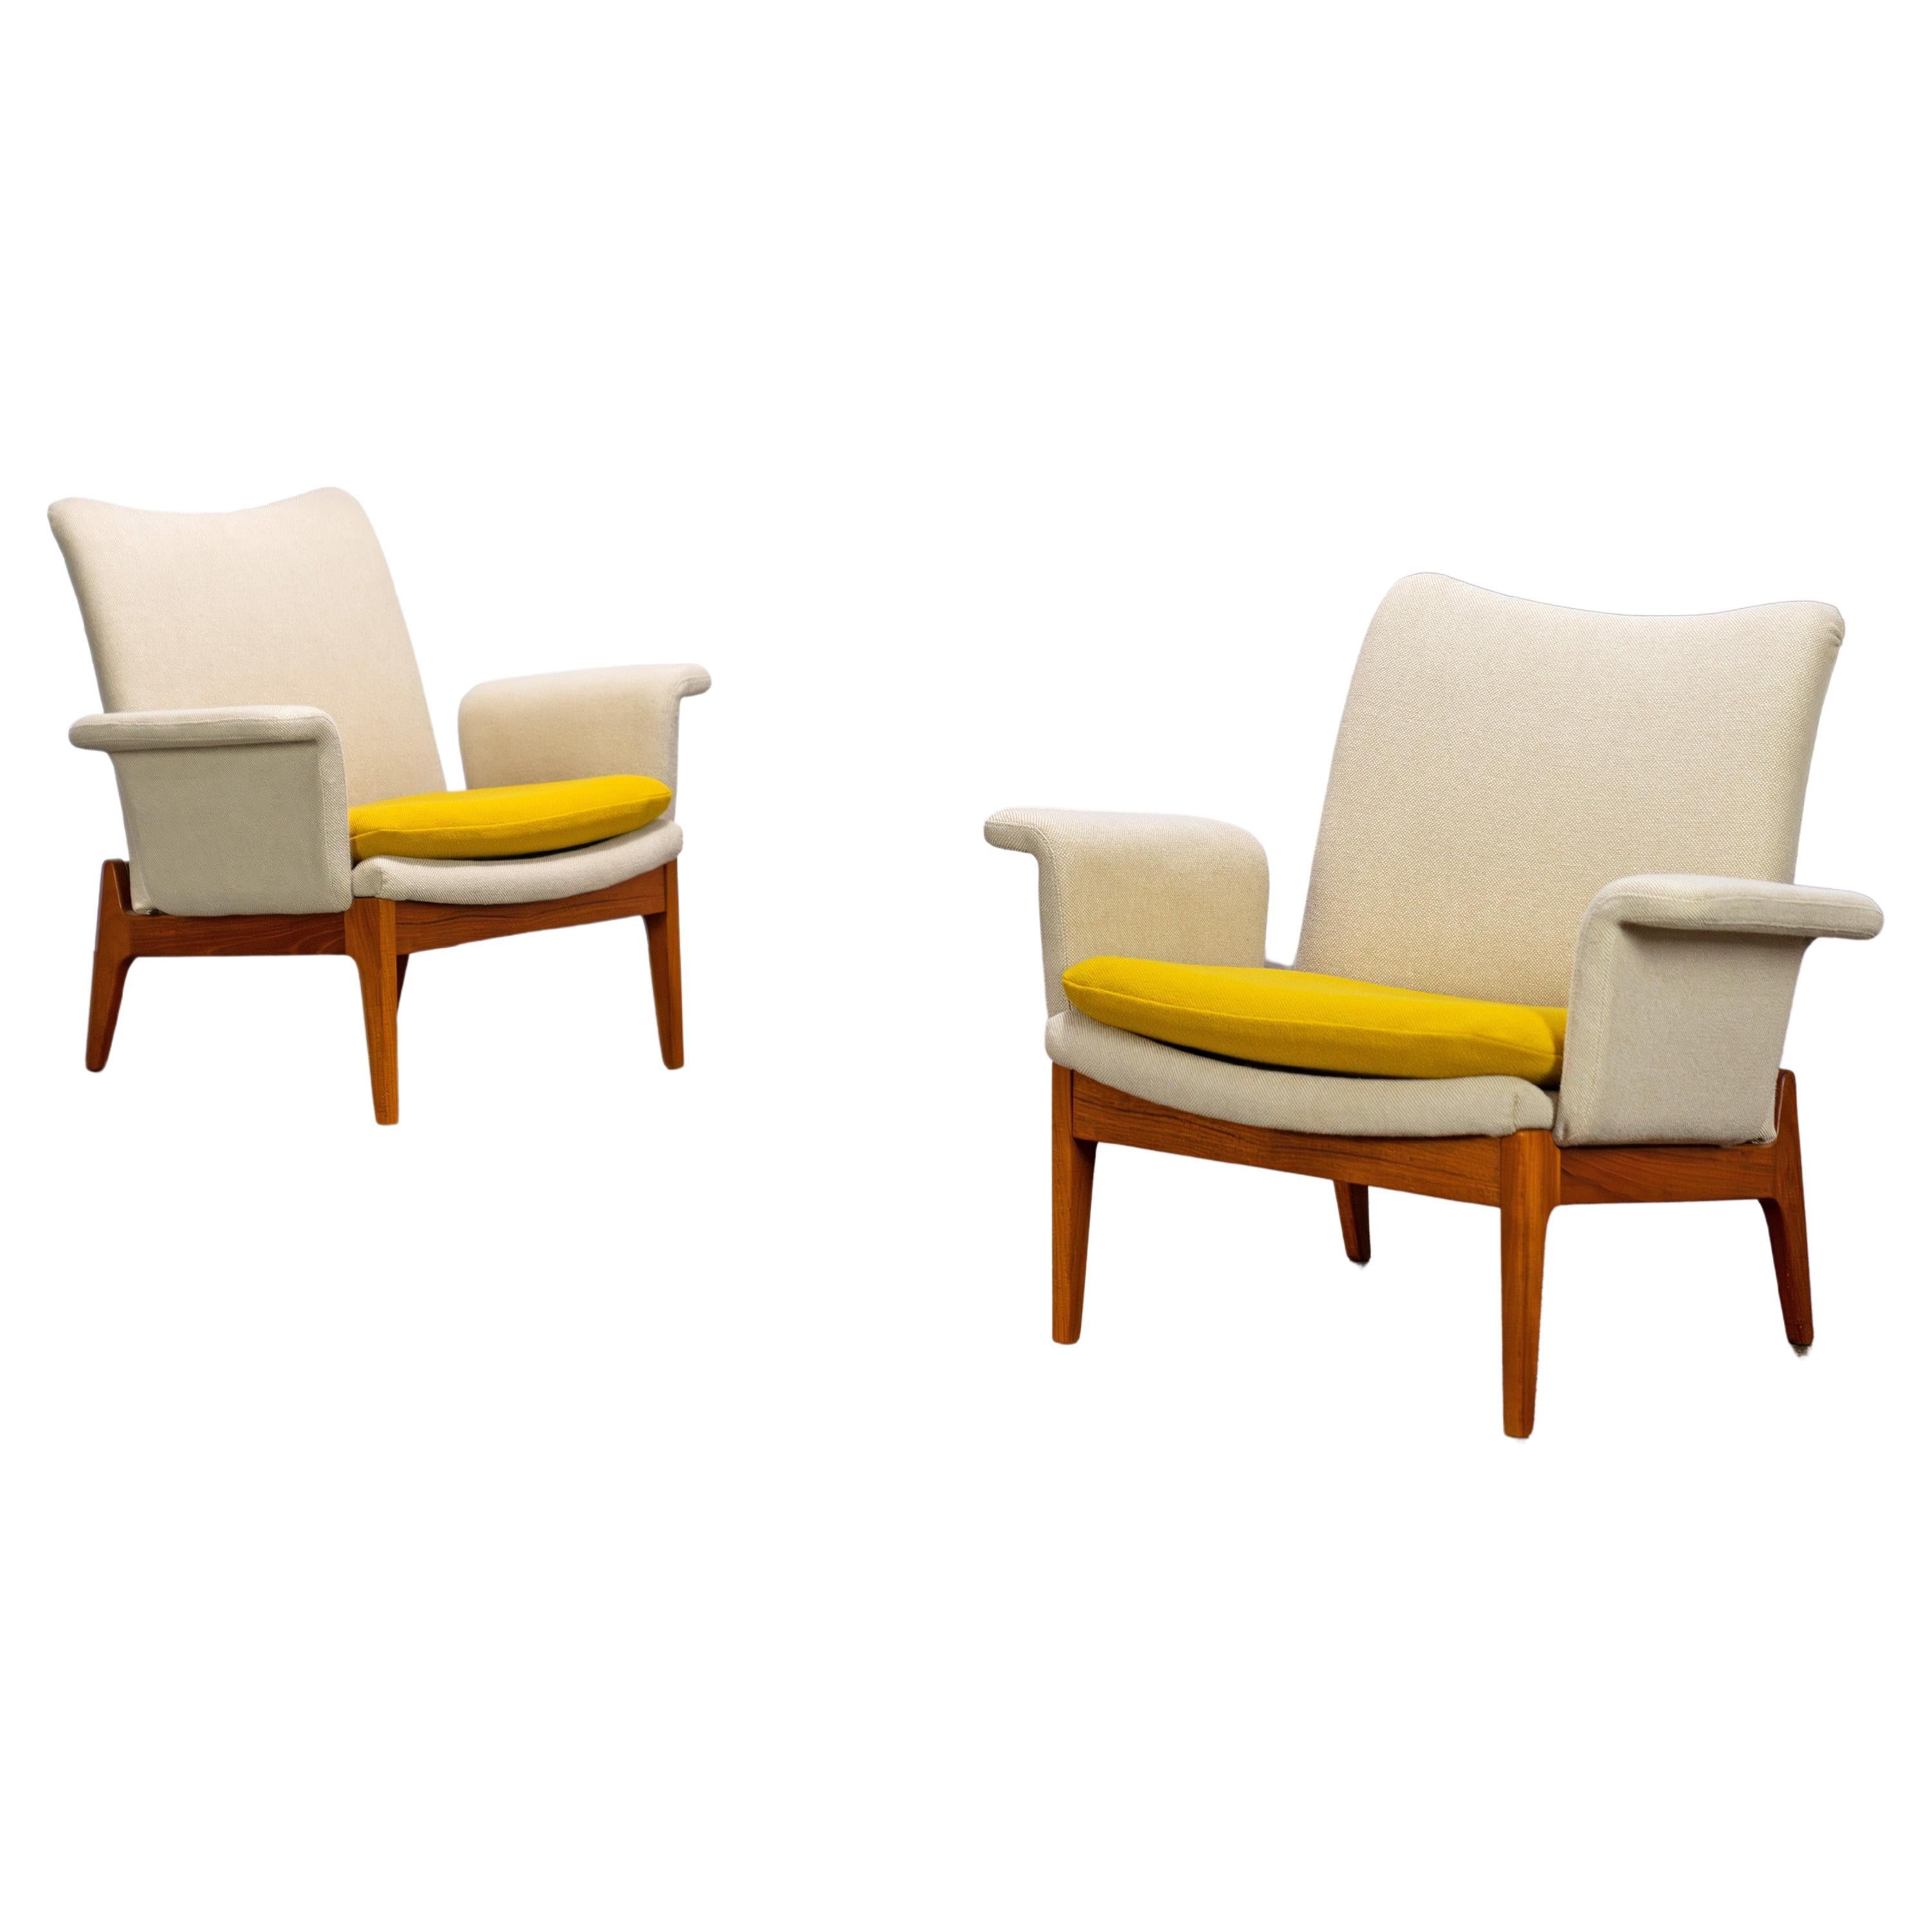 Scandinavian Easy Chairs by Finn Juhl, Mod. 112 France & Søn Denmark 60s